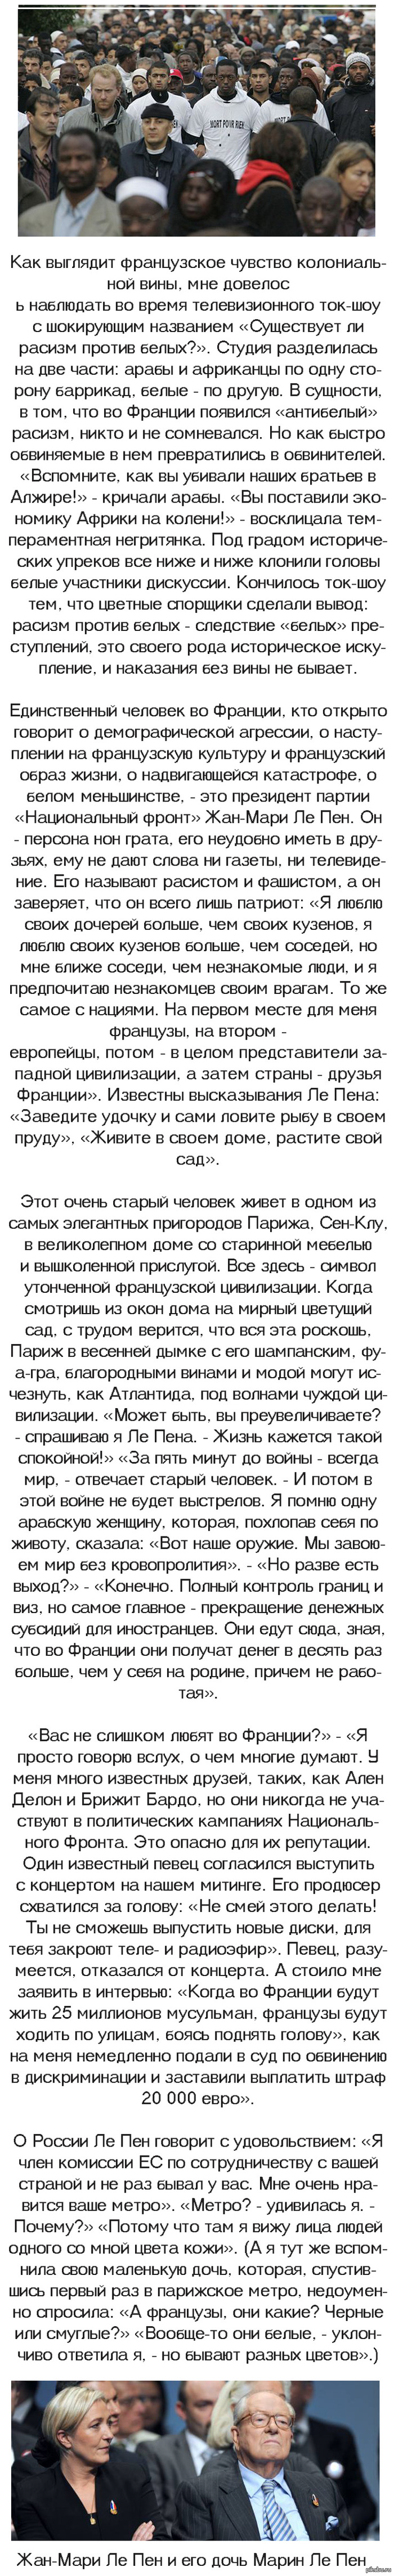  .   :  <a href="http://pikabu.ru/story/agoniya_frantsii_1518937">http://pikabu.ru/story/_1518937</a>  <a href="http://pikabu.ru/story/zakat_beloy_evropyi_1509113">http://pikabu.ru/story/_1509113</a>